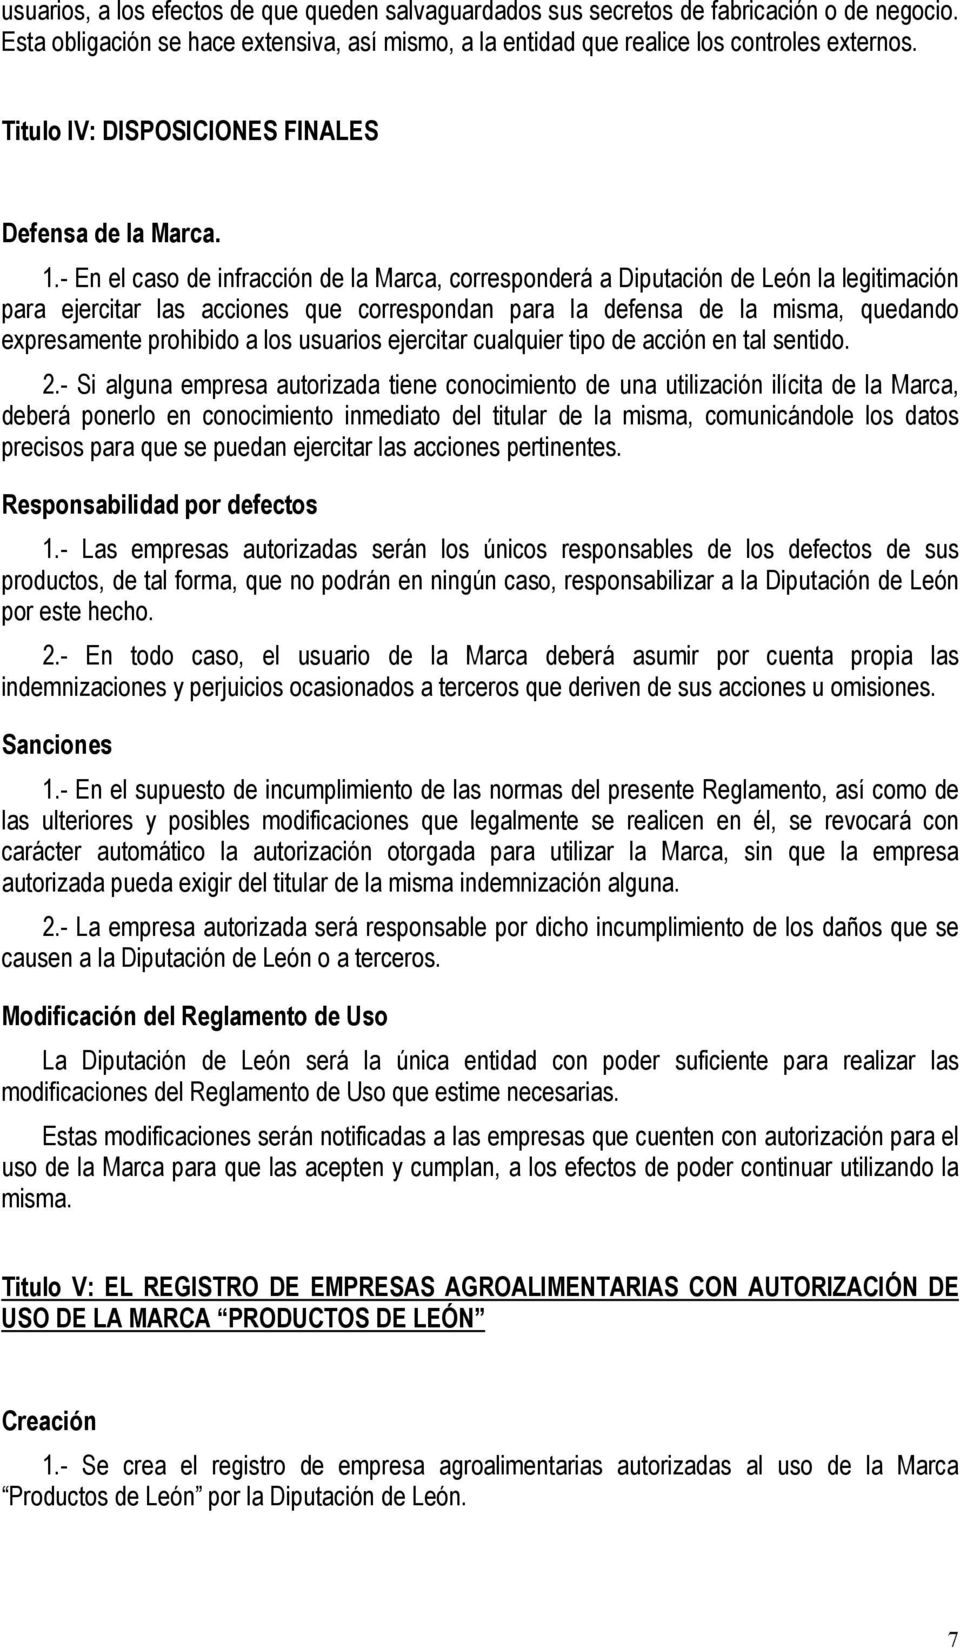 - En el caso de infracción de la Marca, corresponderá a Diputación de León la legitimación para ejercitar las acciones que correspondan para la defensa de la misma, quedando expresamente prohibido a